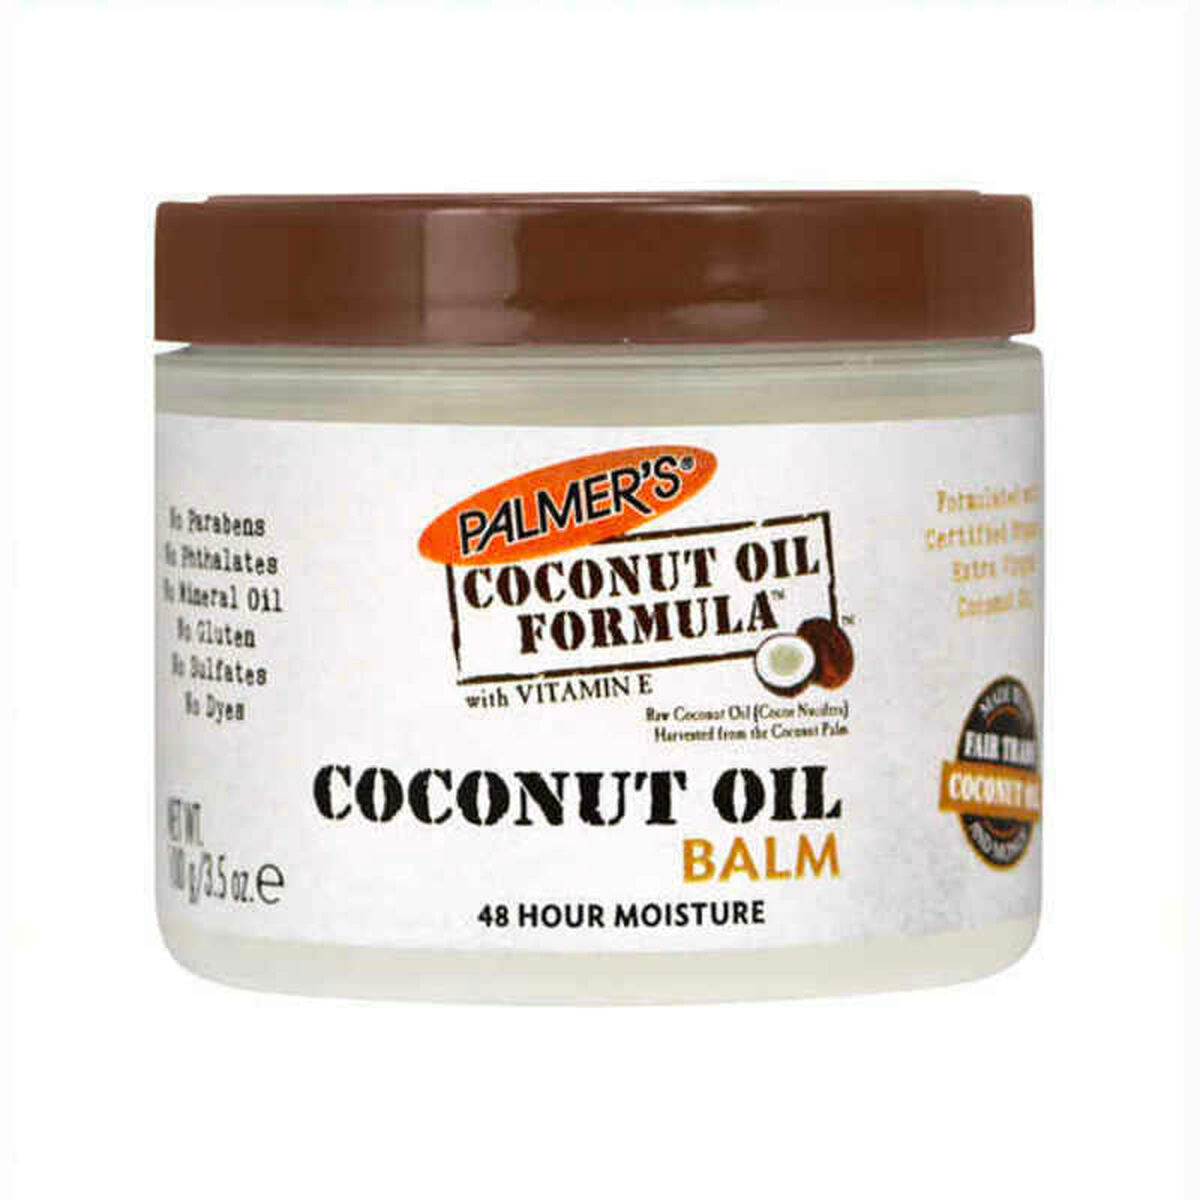 Kokosový olej z těla krému (100 g)